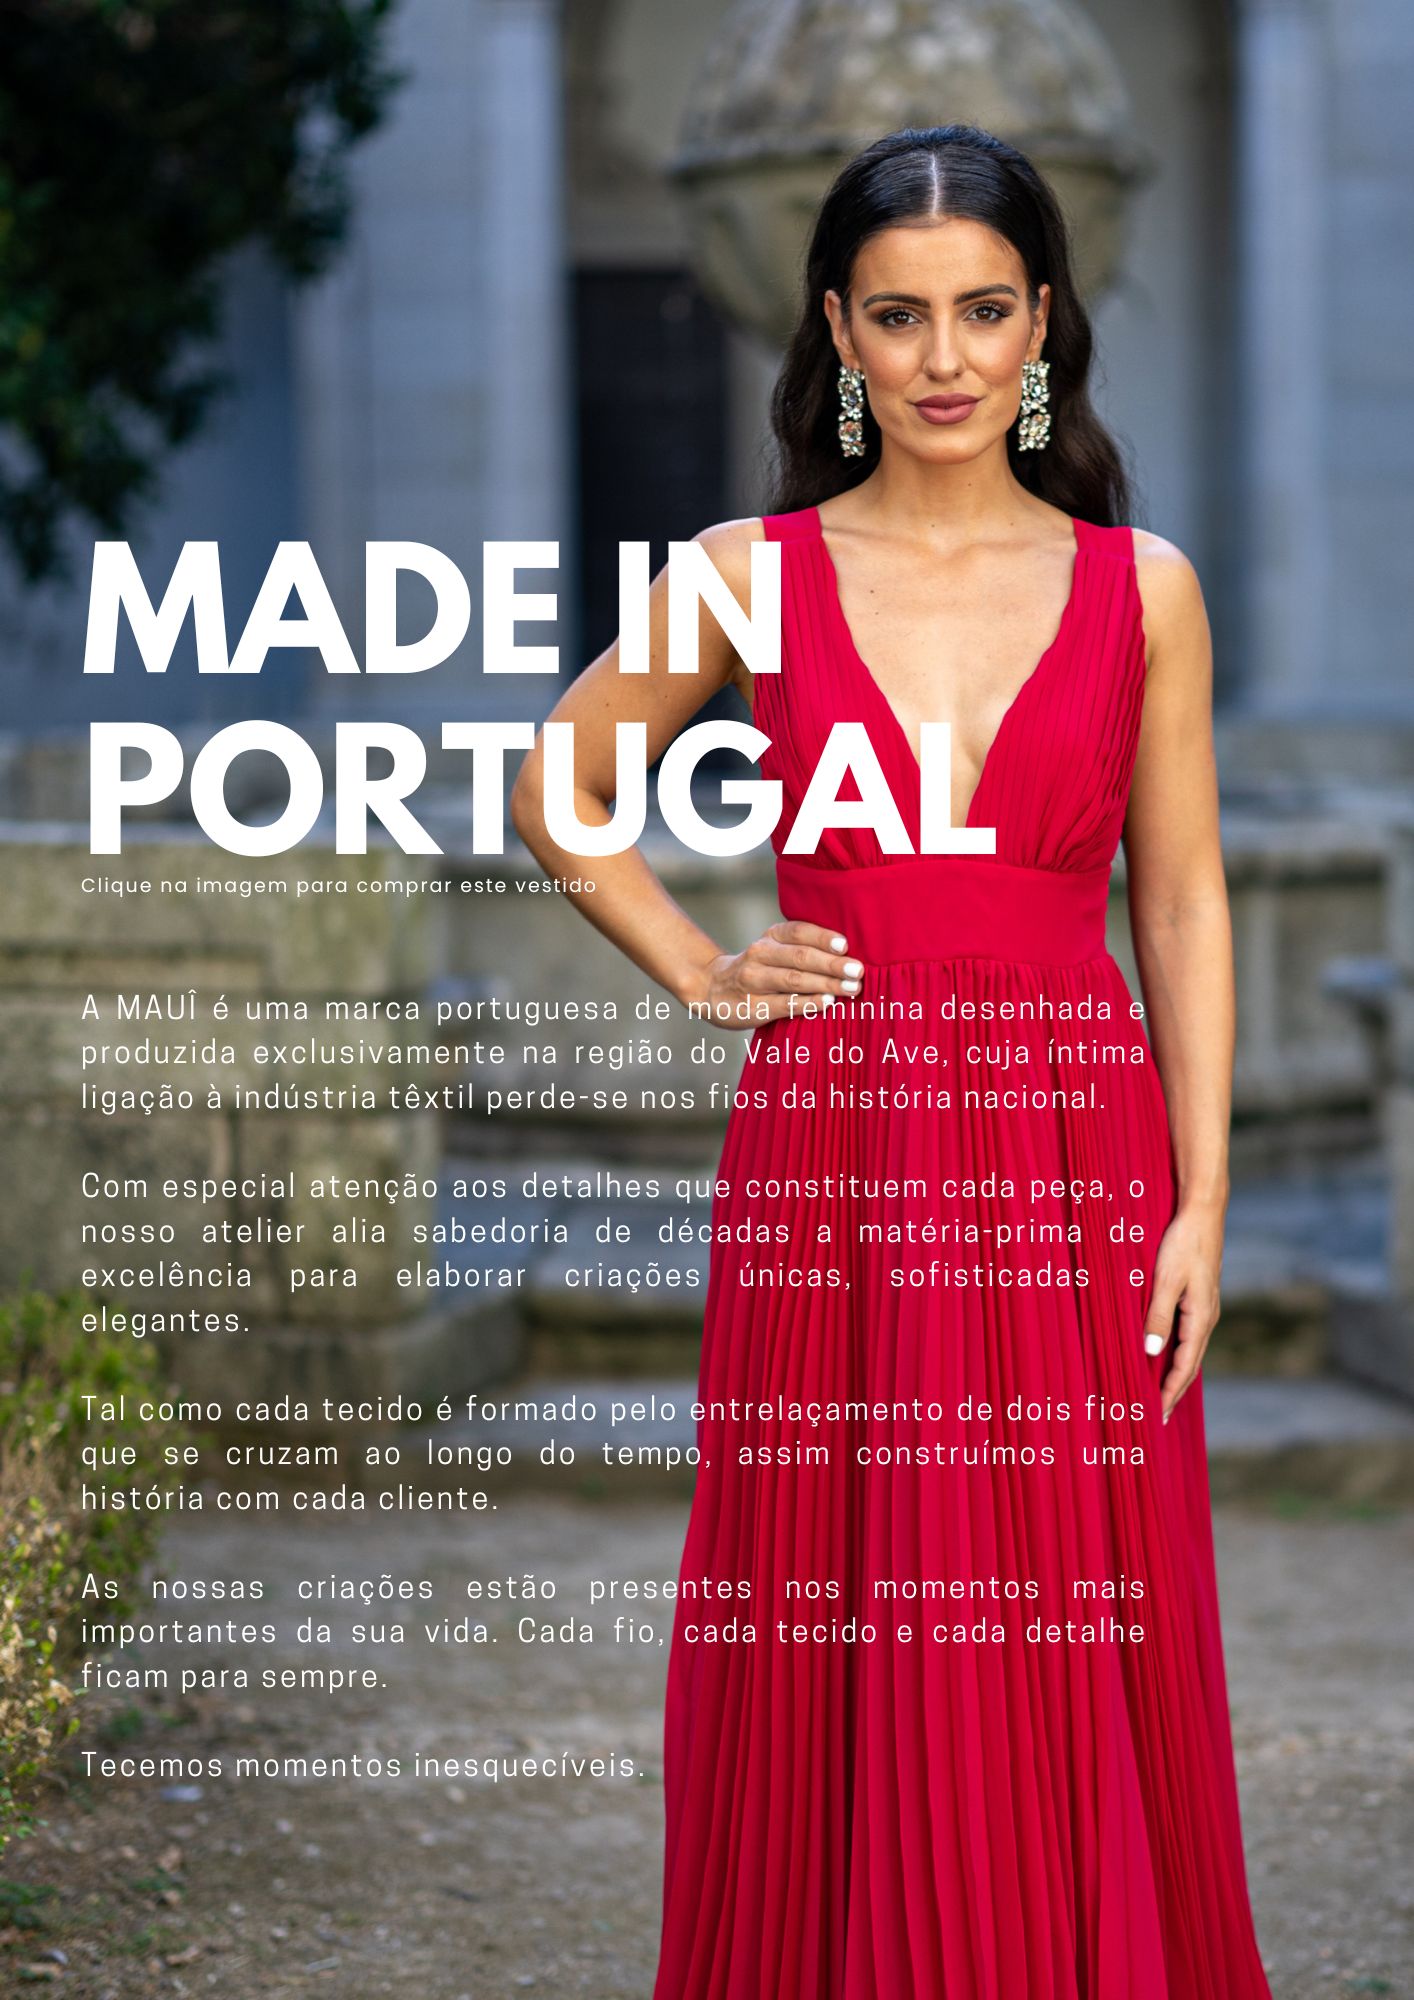 MAUI, vestidos de festa, marca 100% Portuguesa, feito à mão, alta qualidade, cores personalizadas, envios rápidos, moda feminina, sustentável